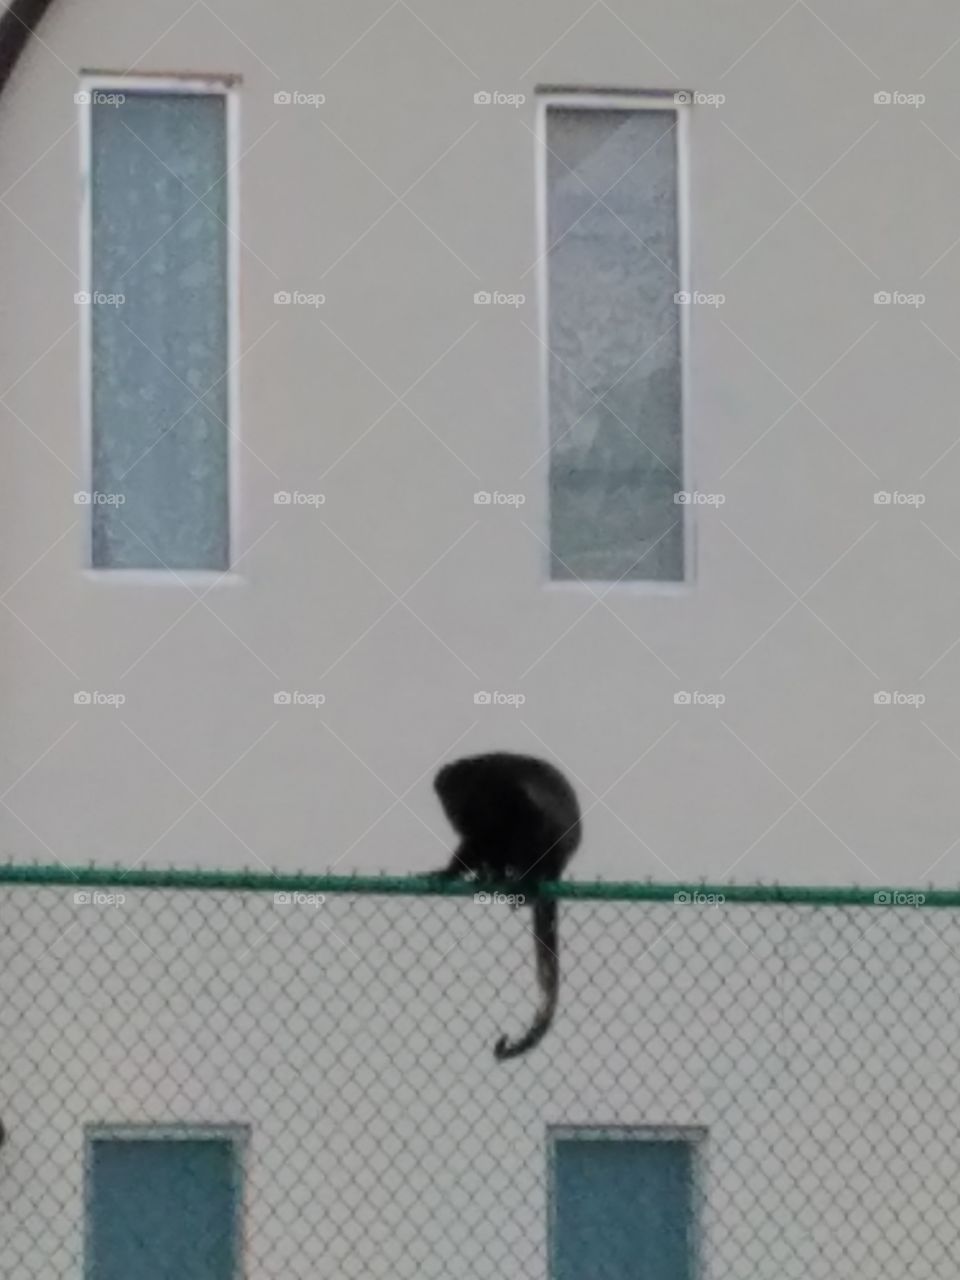 monkey on fence